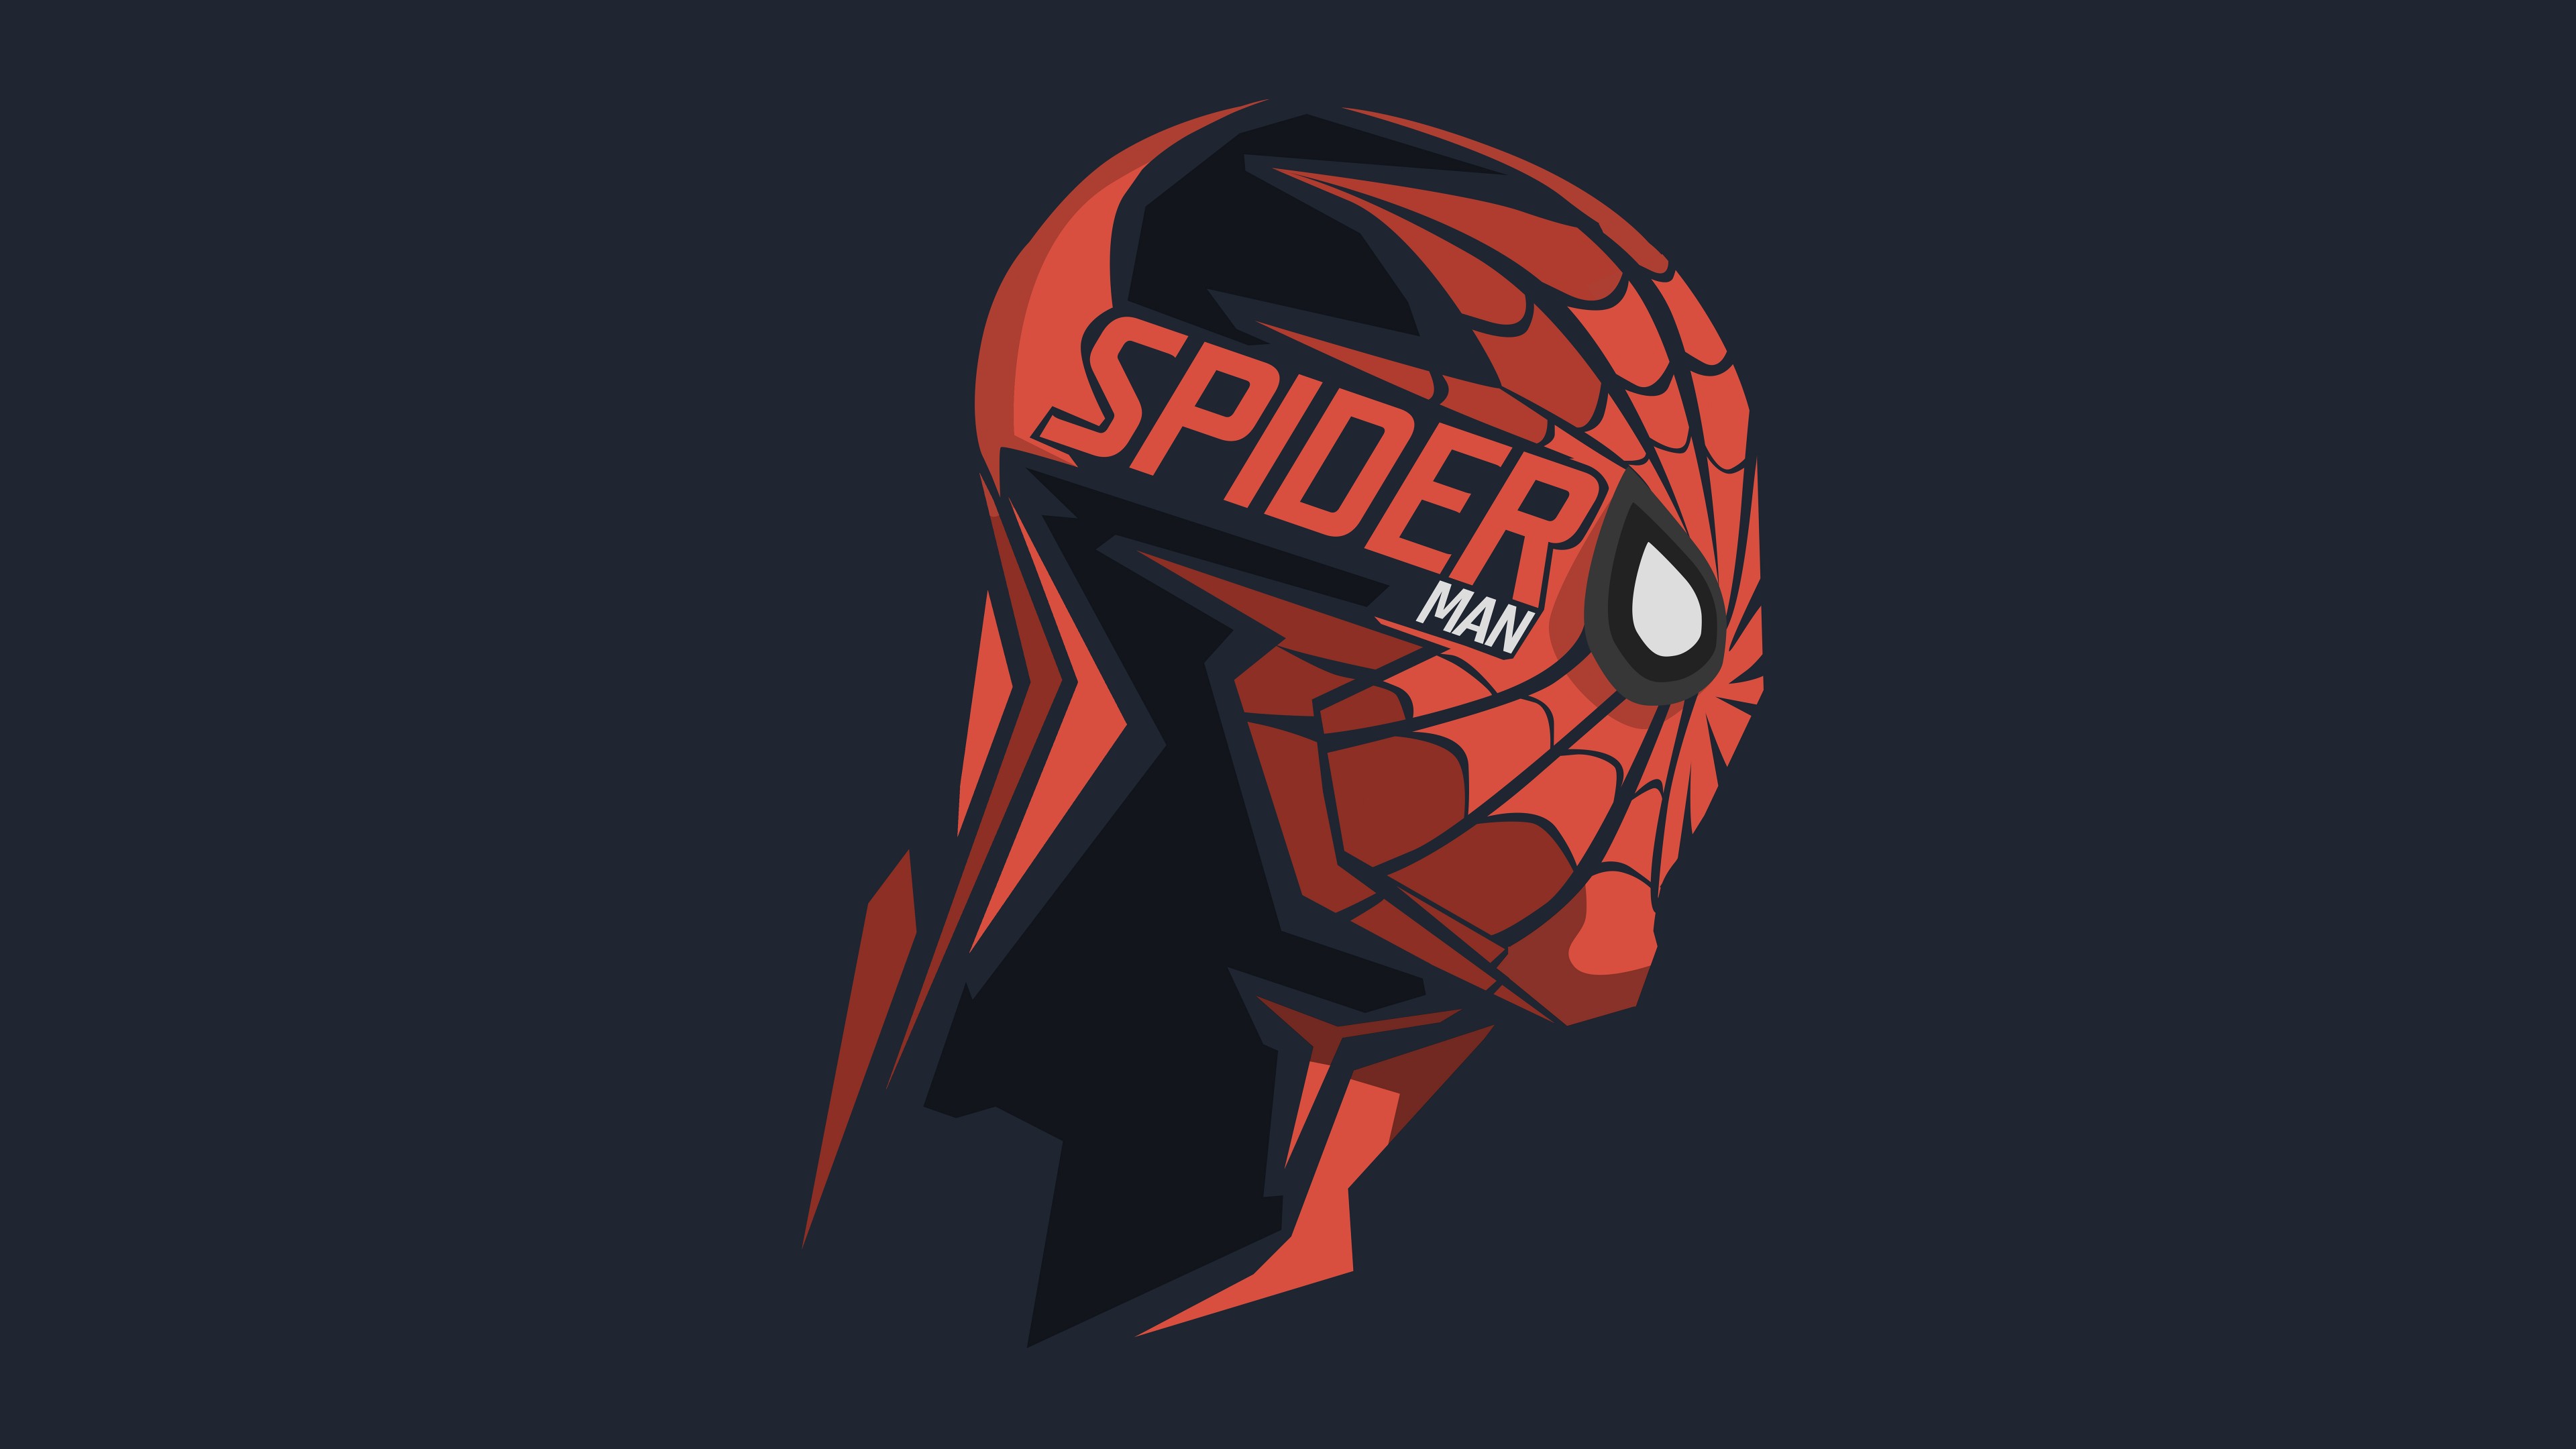 spiderman wallpaper hd,casco,illustrazione,personaggio fittizio,equipaggiamento sportivo,disegno grafico